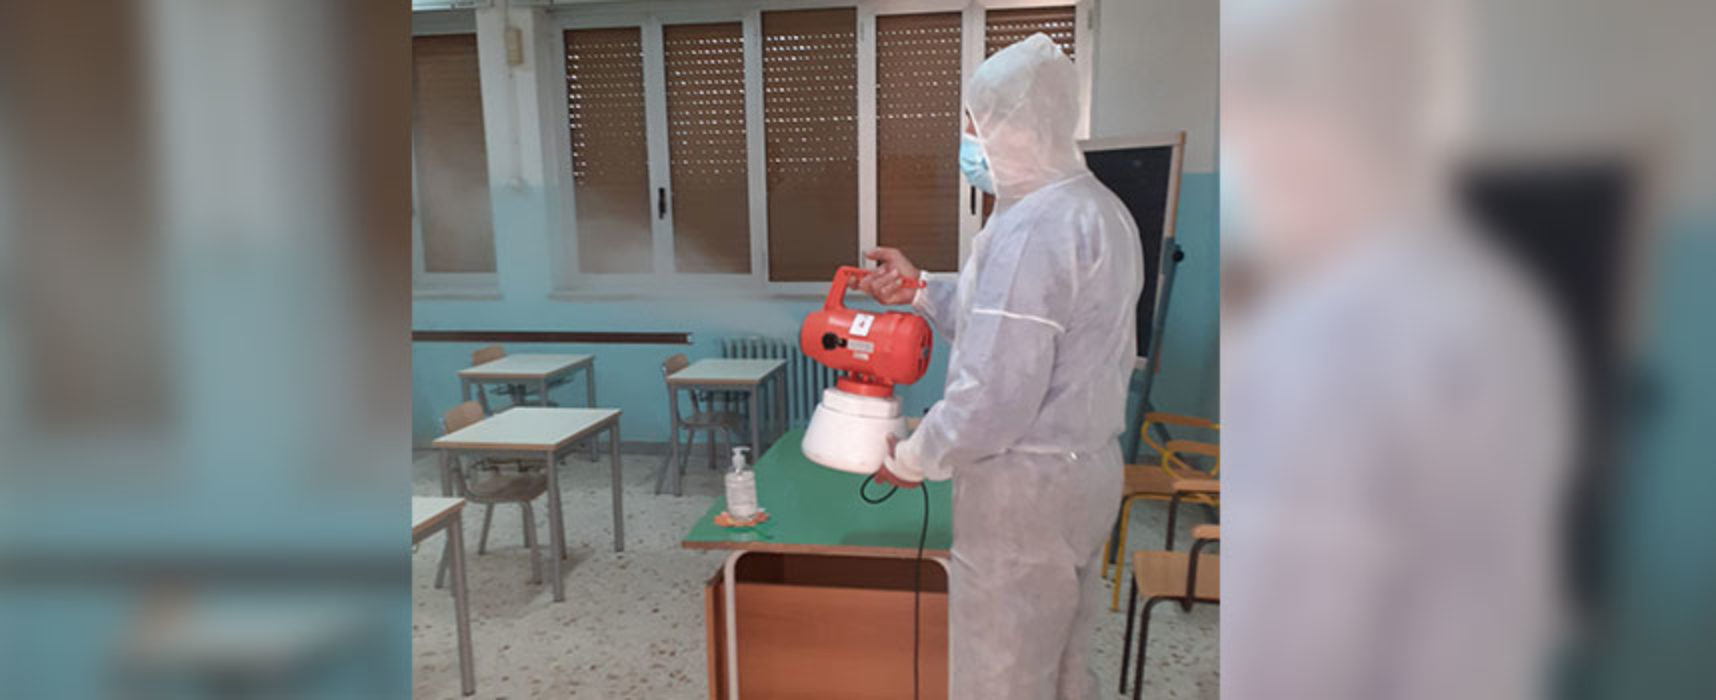 Angarano: “In scuole di competenza comunale effettuate sanificazione e preriscaldamento” / FOTO